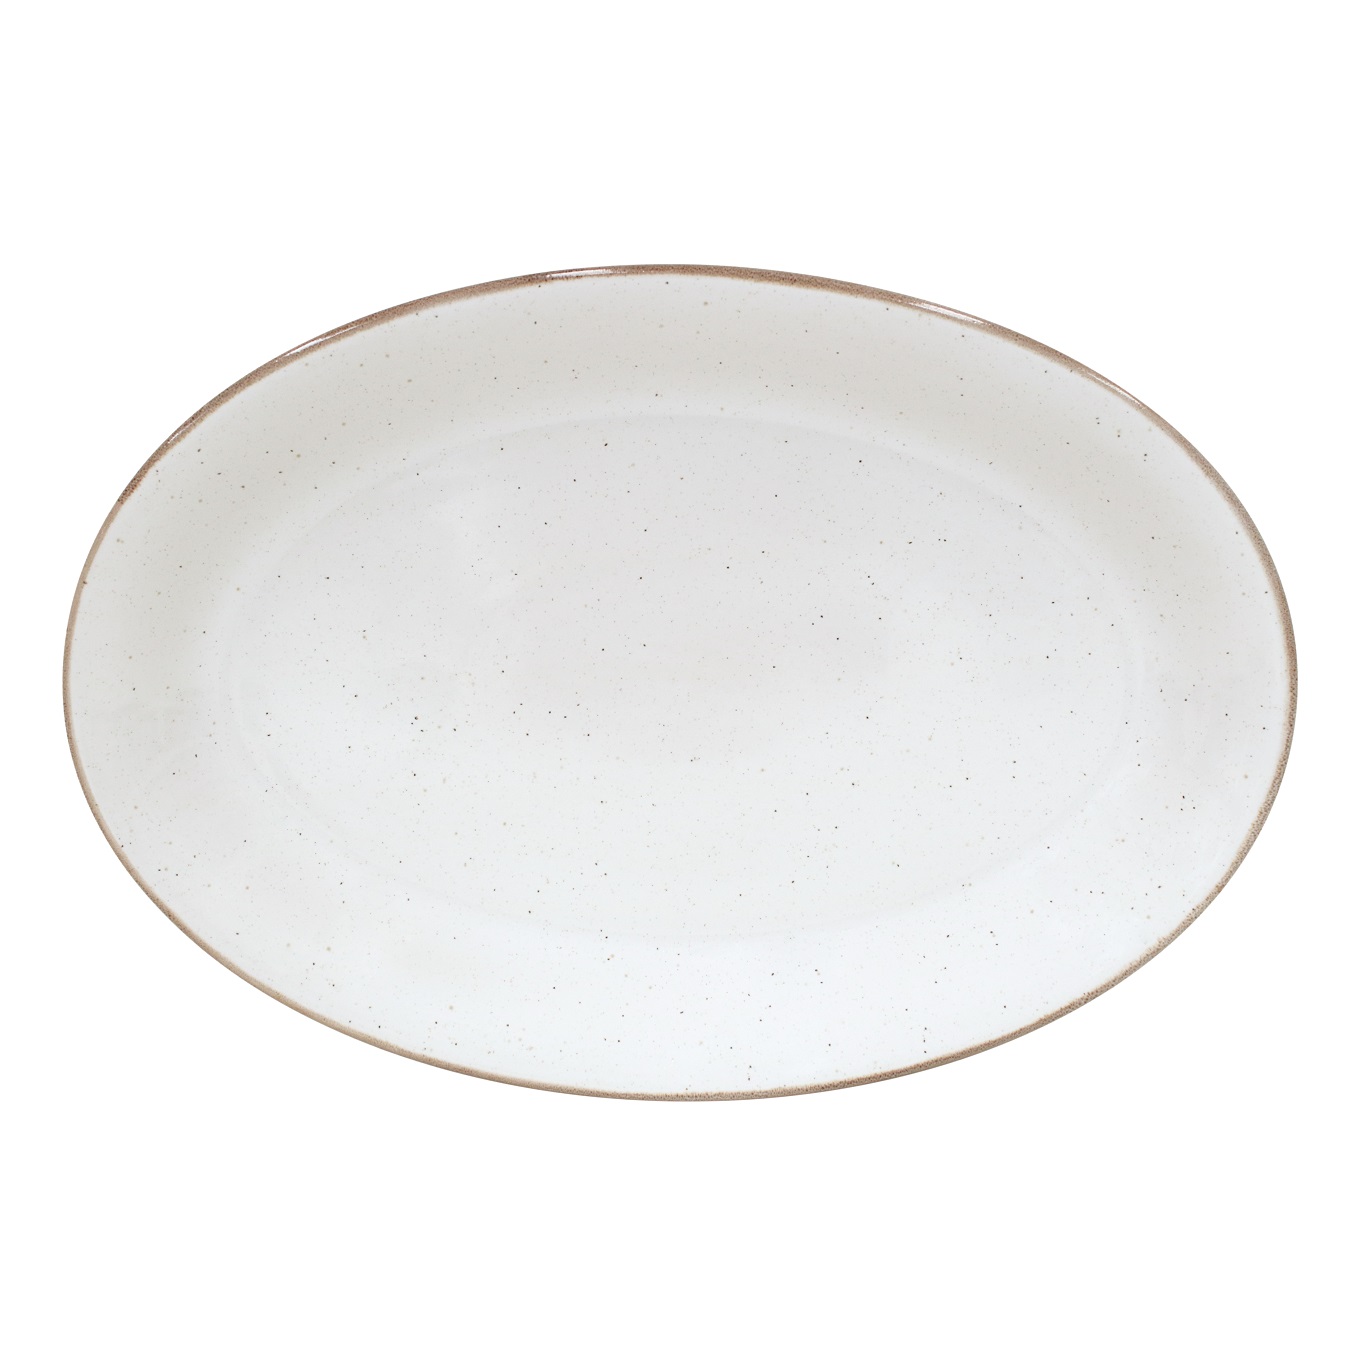 Sardegna White Oval Platter 46cm Gift